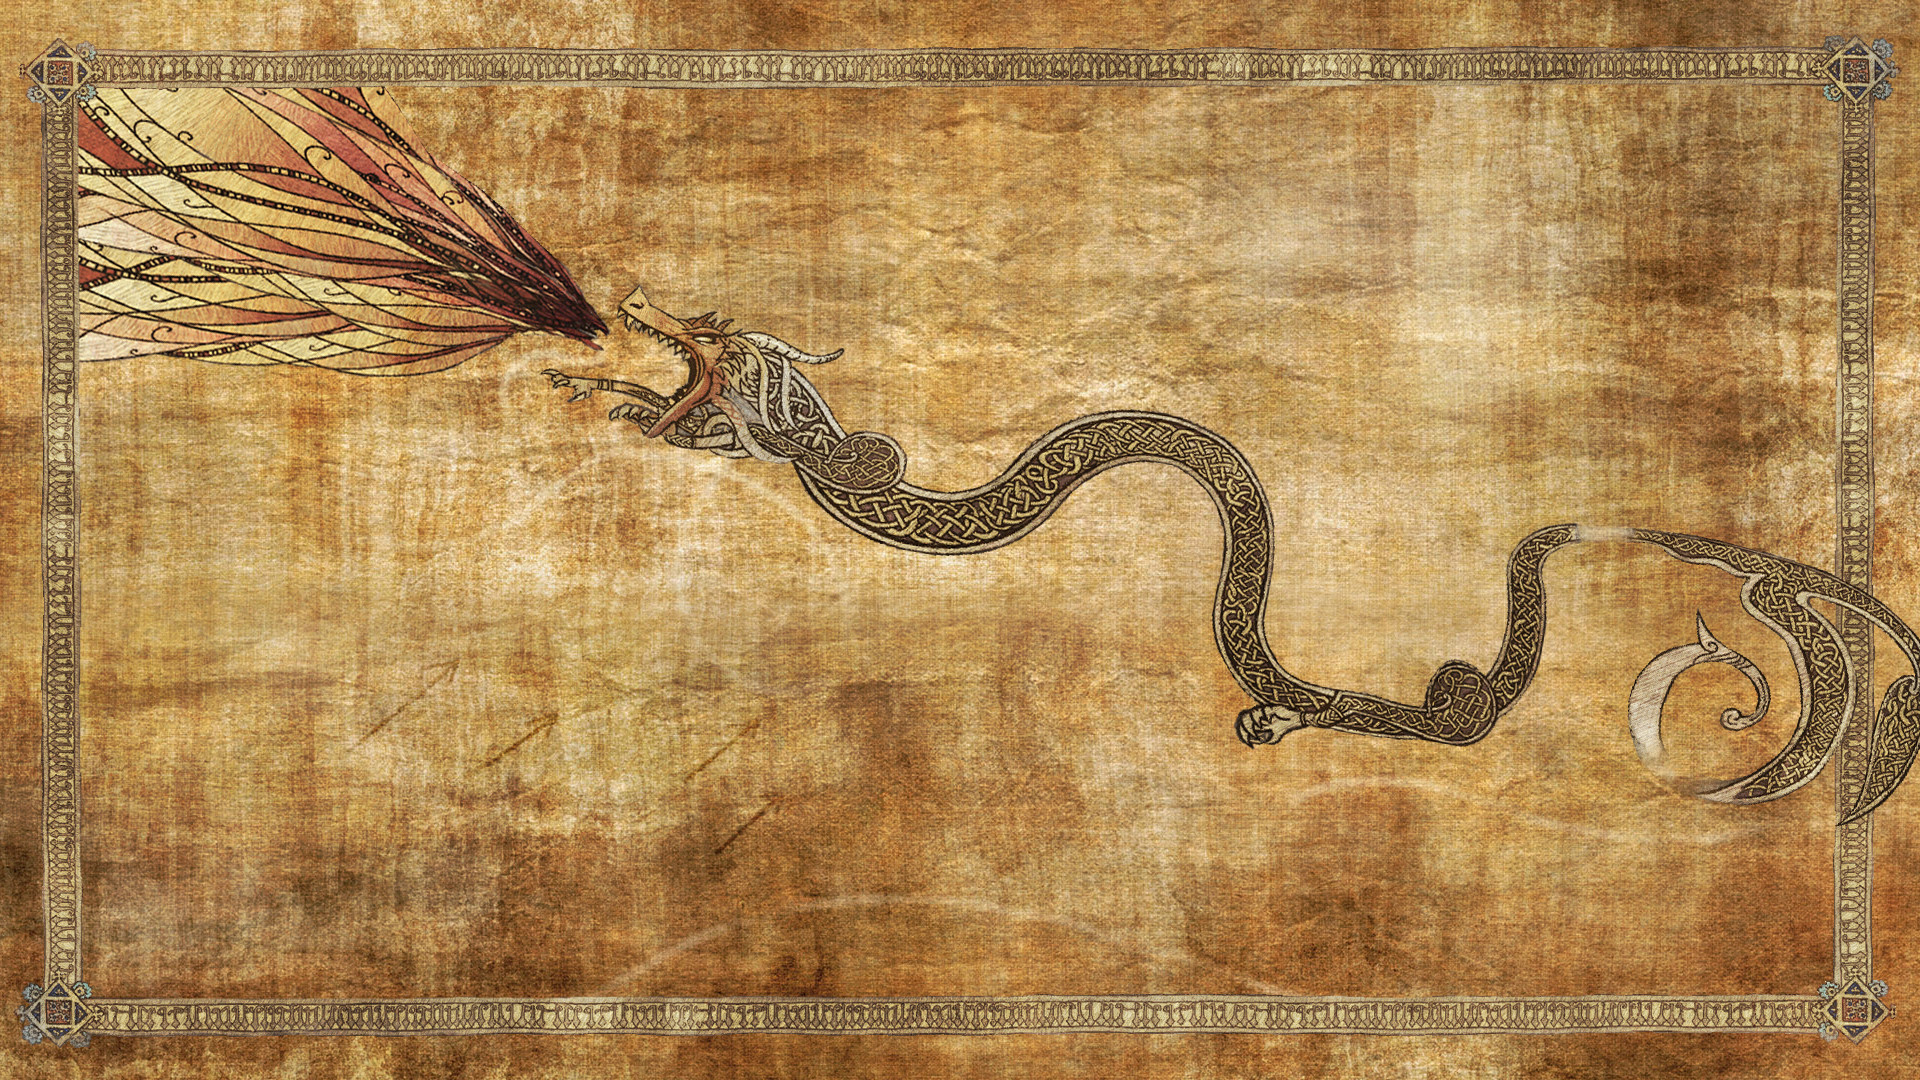 1920x1080 dragon lore wallpaperjpg 